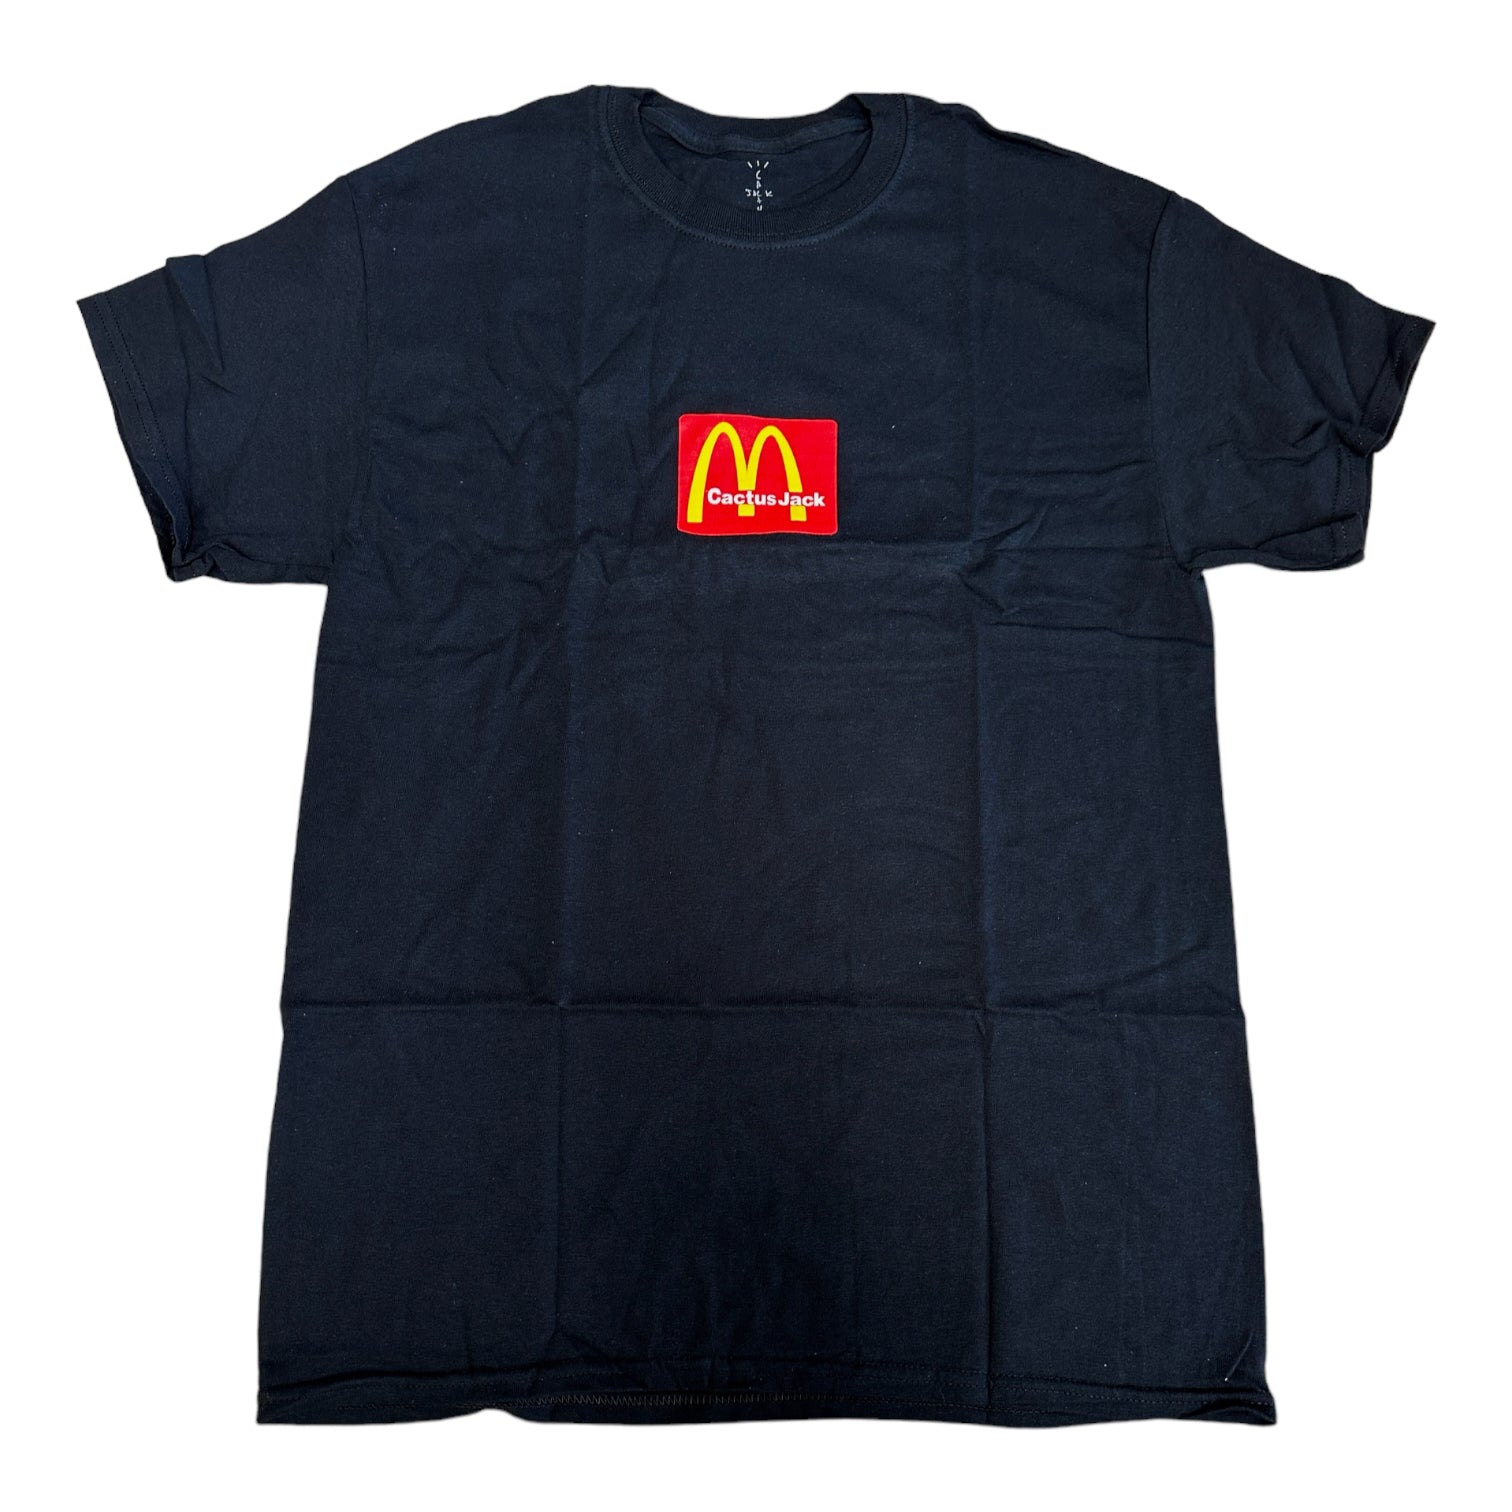 Travis Scott x McDonald's Sesame II Tee Blk/Red